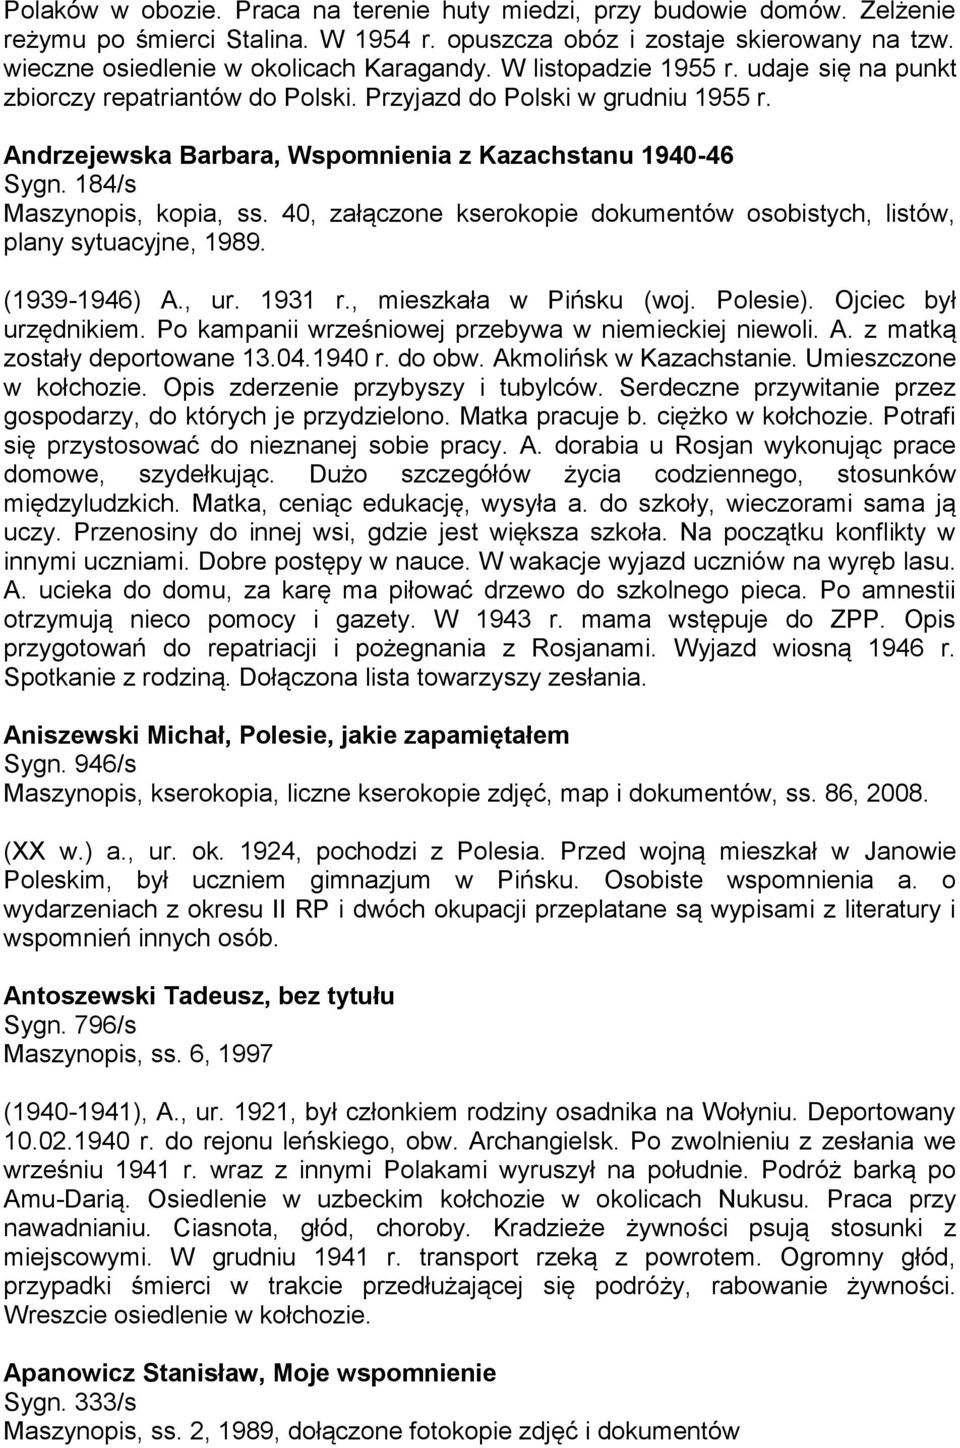 184/s Maszynopis, kopia, ss. 40, załączone kserokopie dokumentów osobistych, listów, plany sytuacyjne, 1989. (1939-1946) A., ur. 1931 r., mieszkała w Pińsku (woj. Polesie). Ojciec był urzędnikiem.